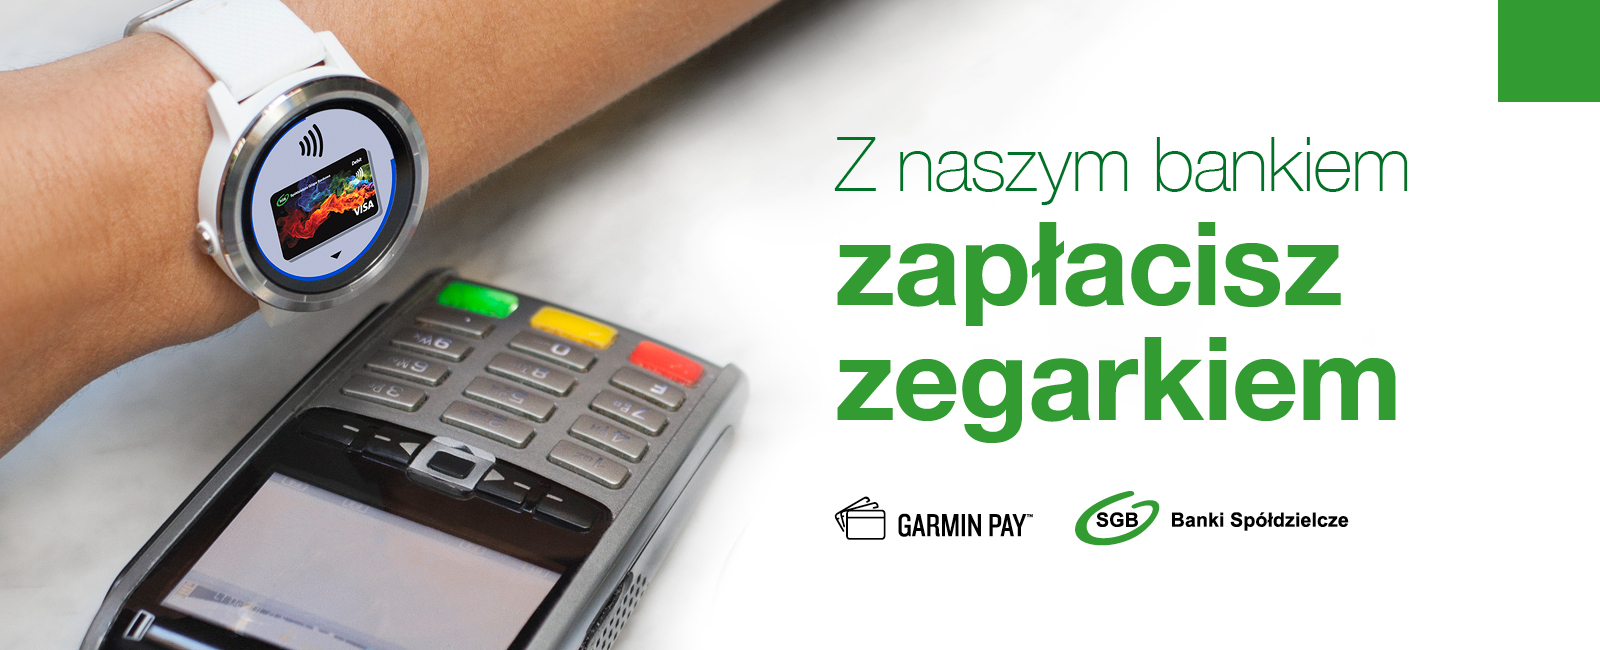 Płatności Garmin Pay już w Banku Spółdzielczym w Kórniku.